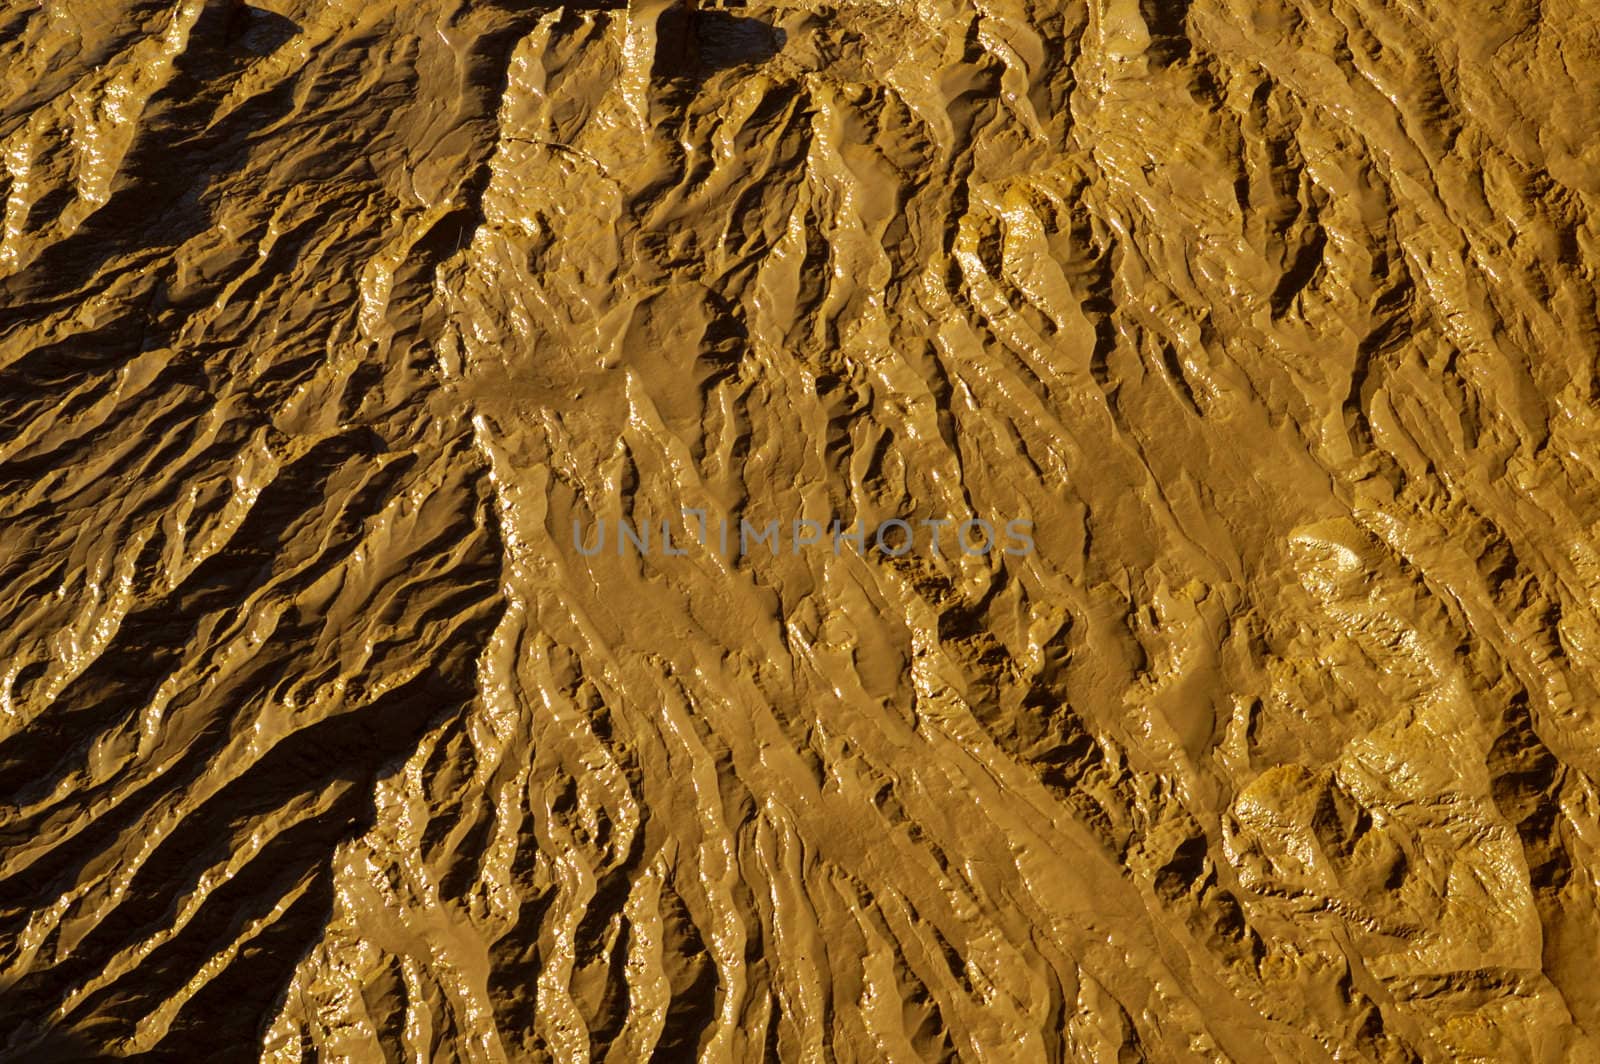 Mudflats by Bateleur